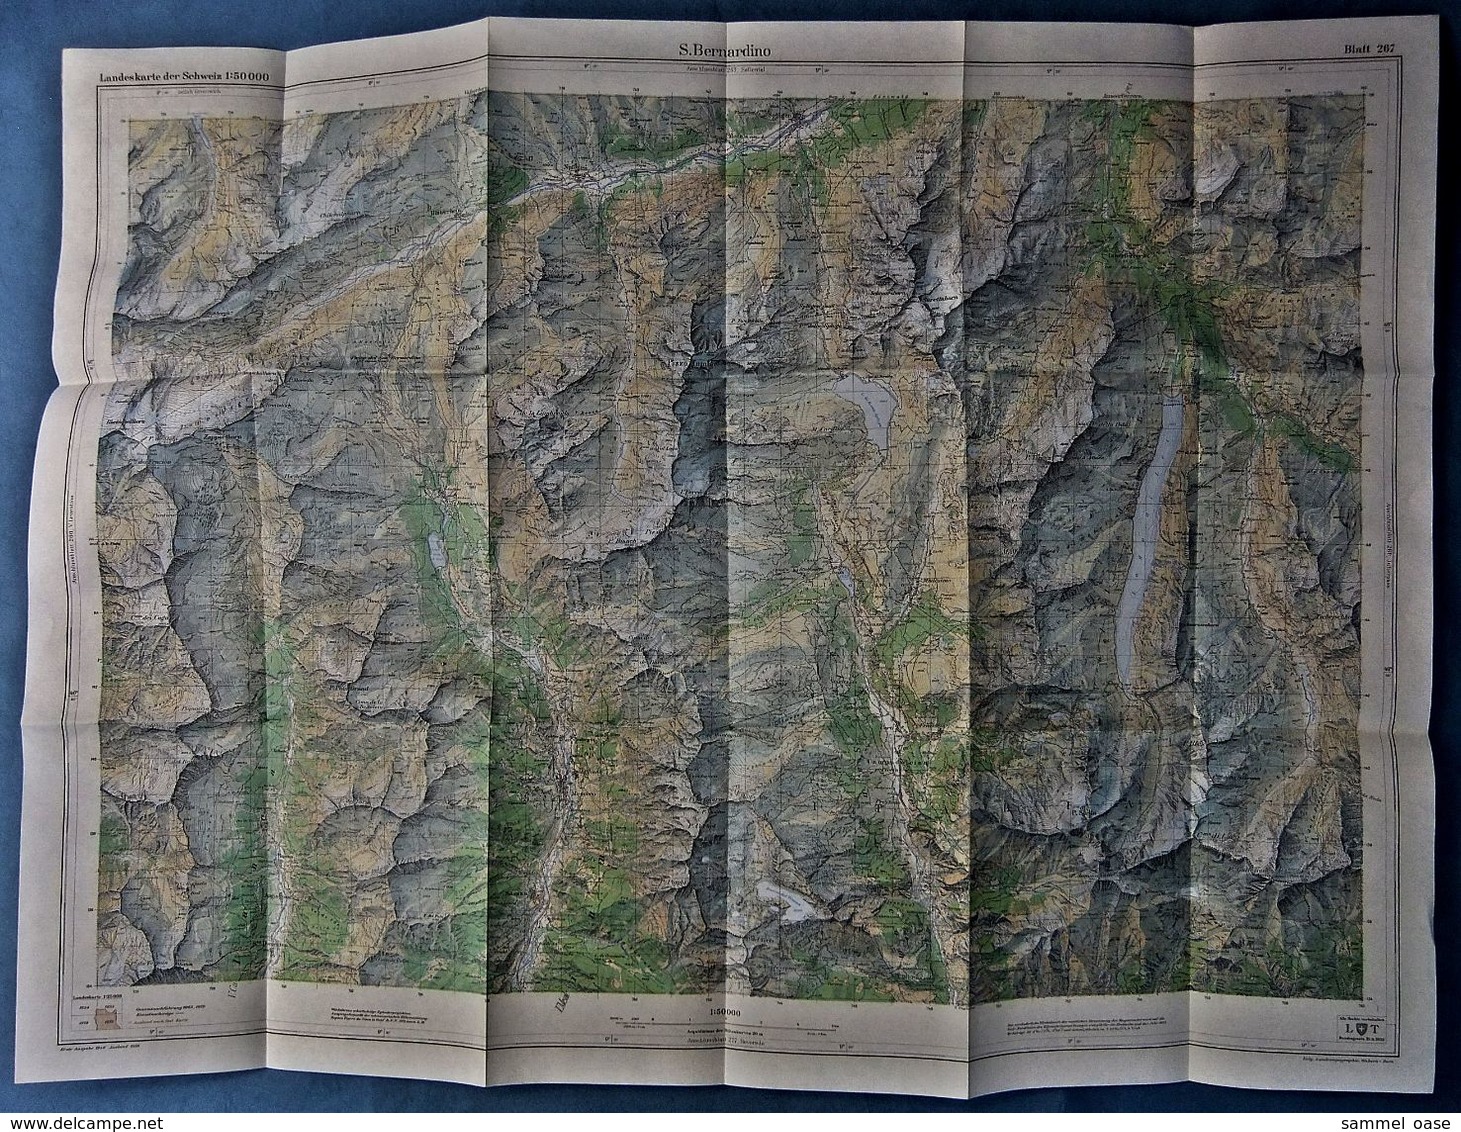 Topographische Karte / Landeskarte Schweiz  -  S. Bernardino 267  - 1:50 000  -  1970 - Landkarten